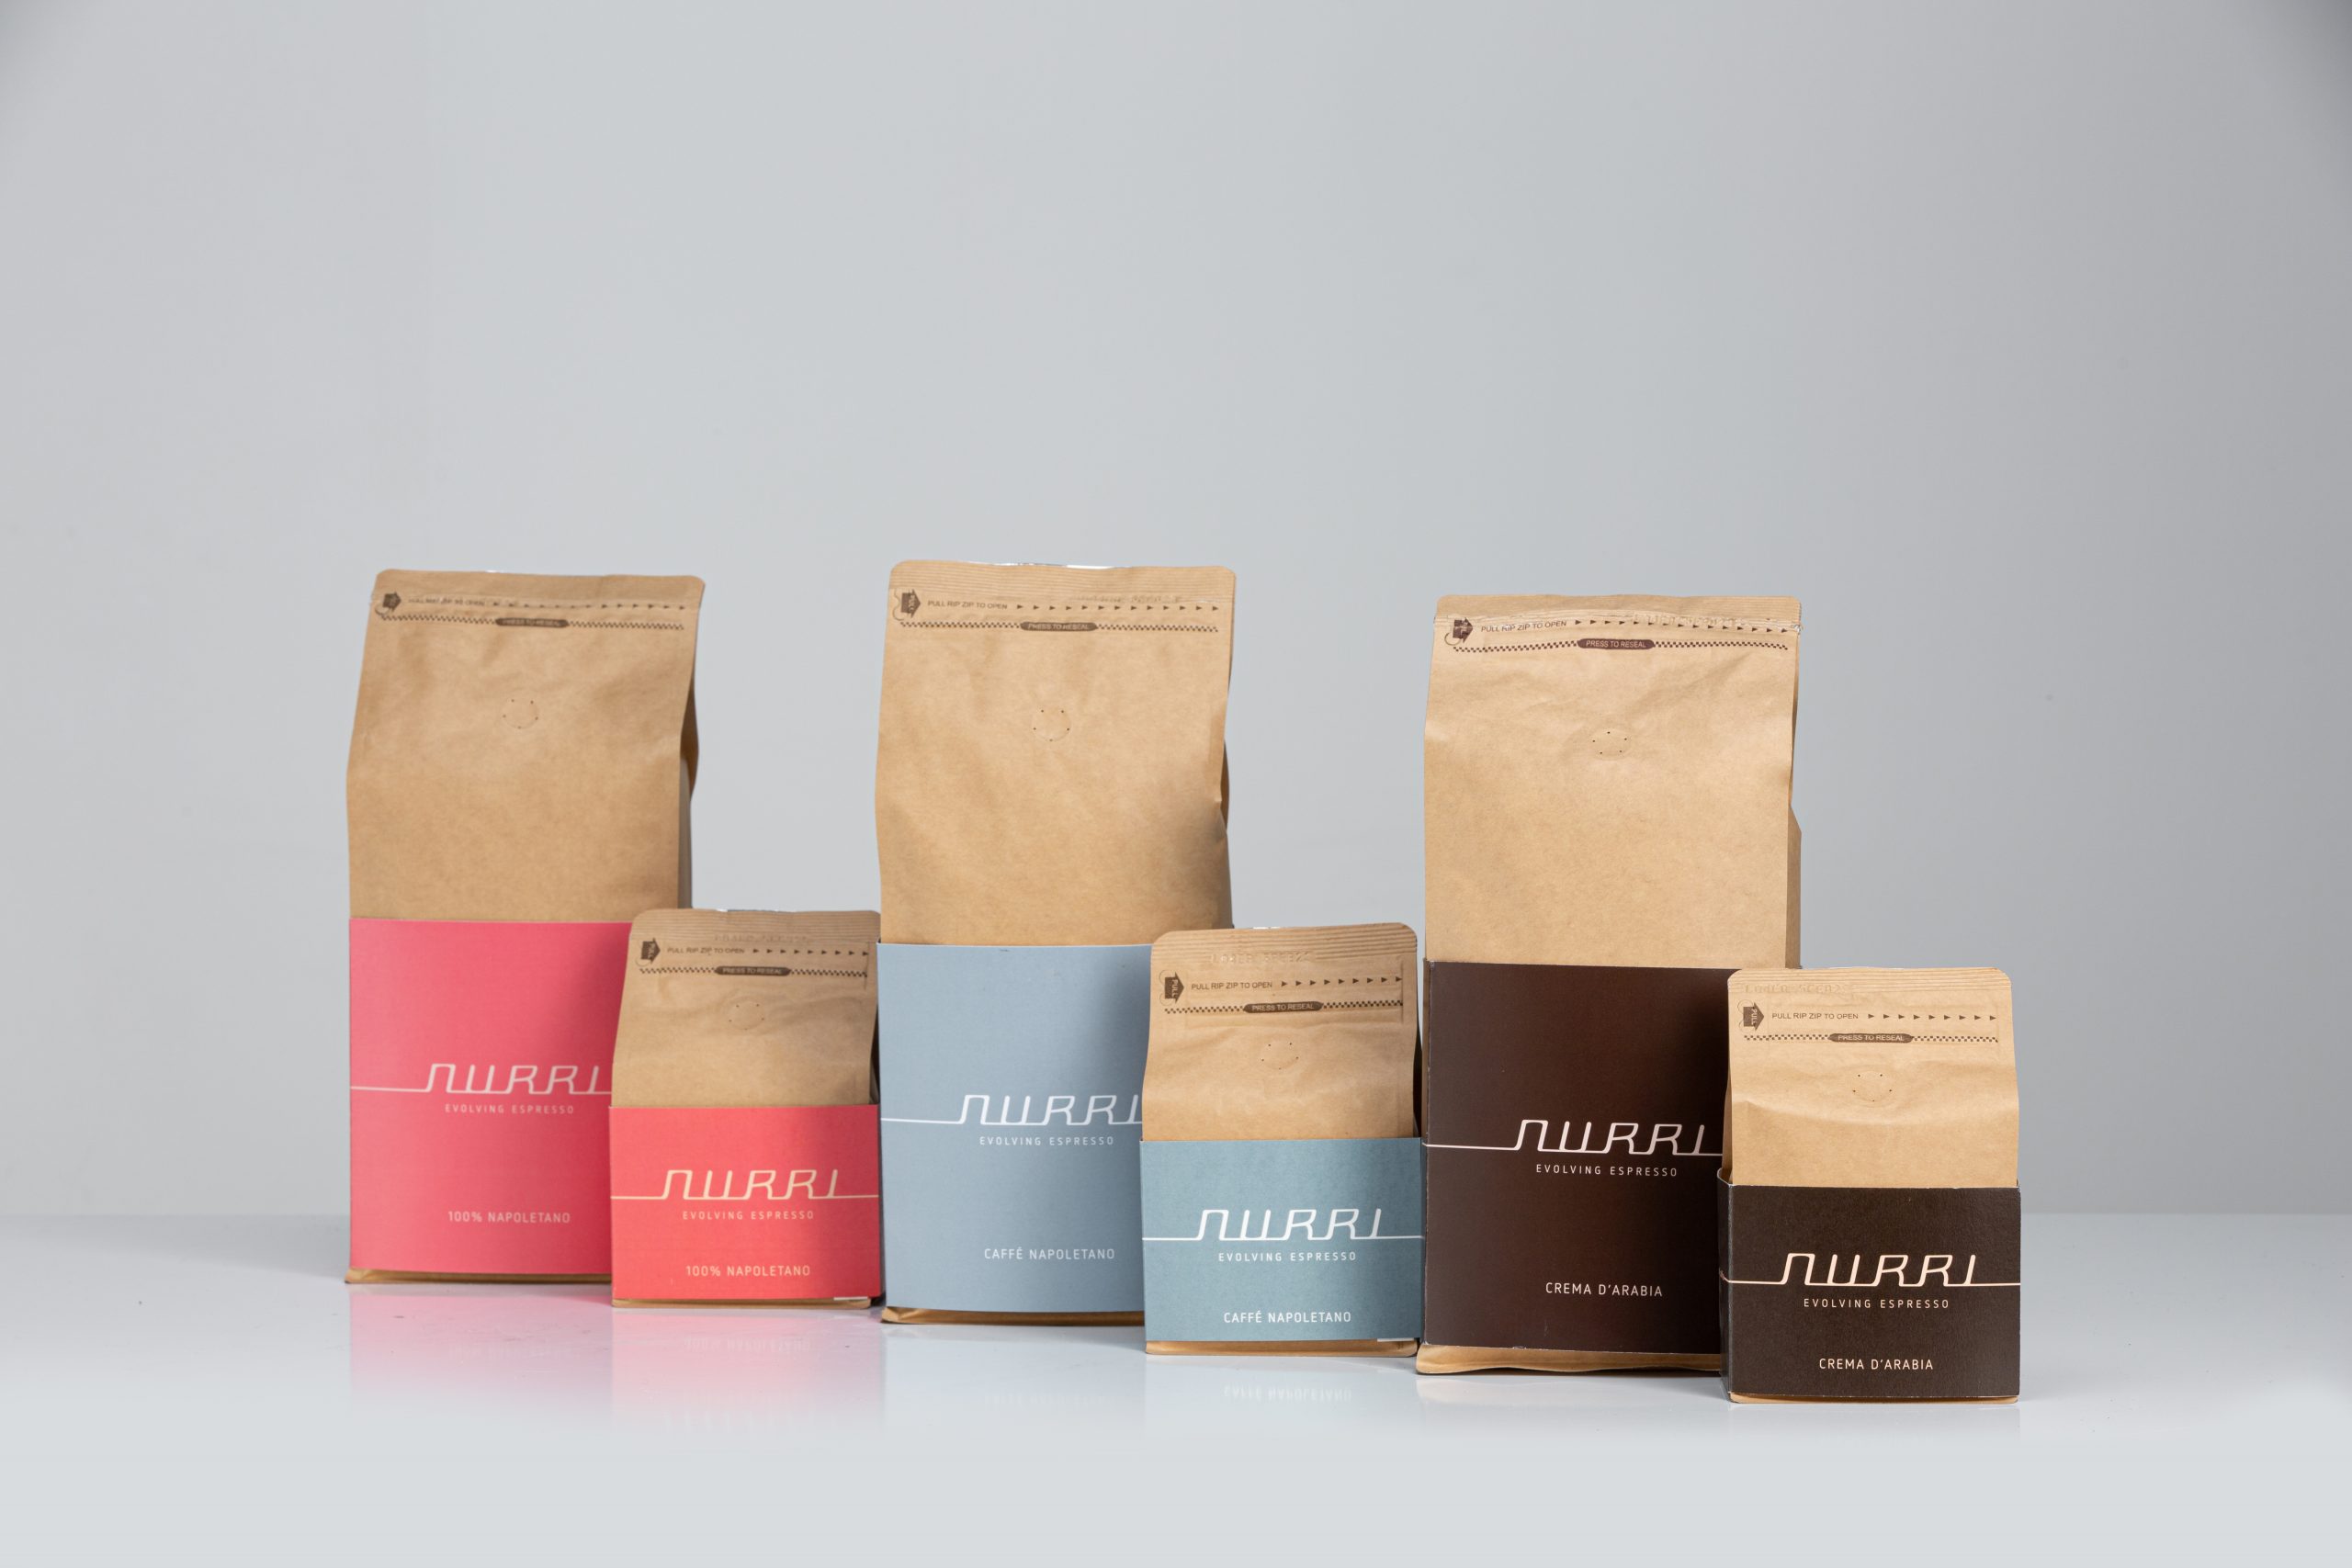 Nurri coffee blends all packs